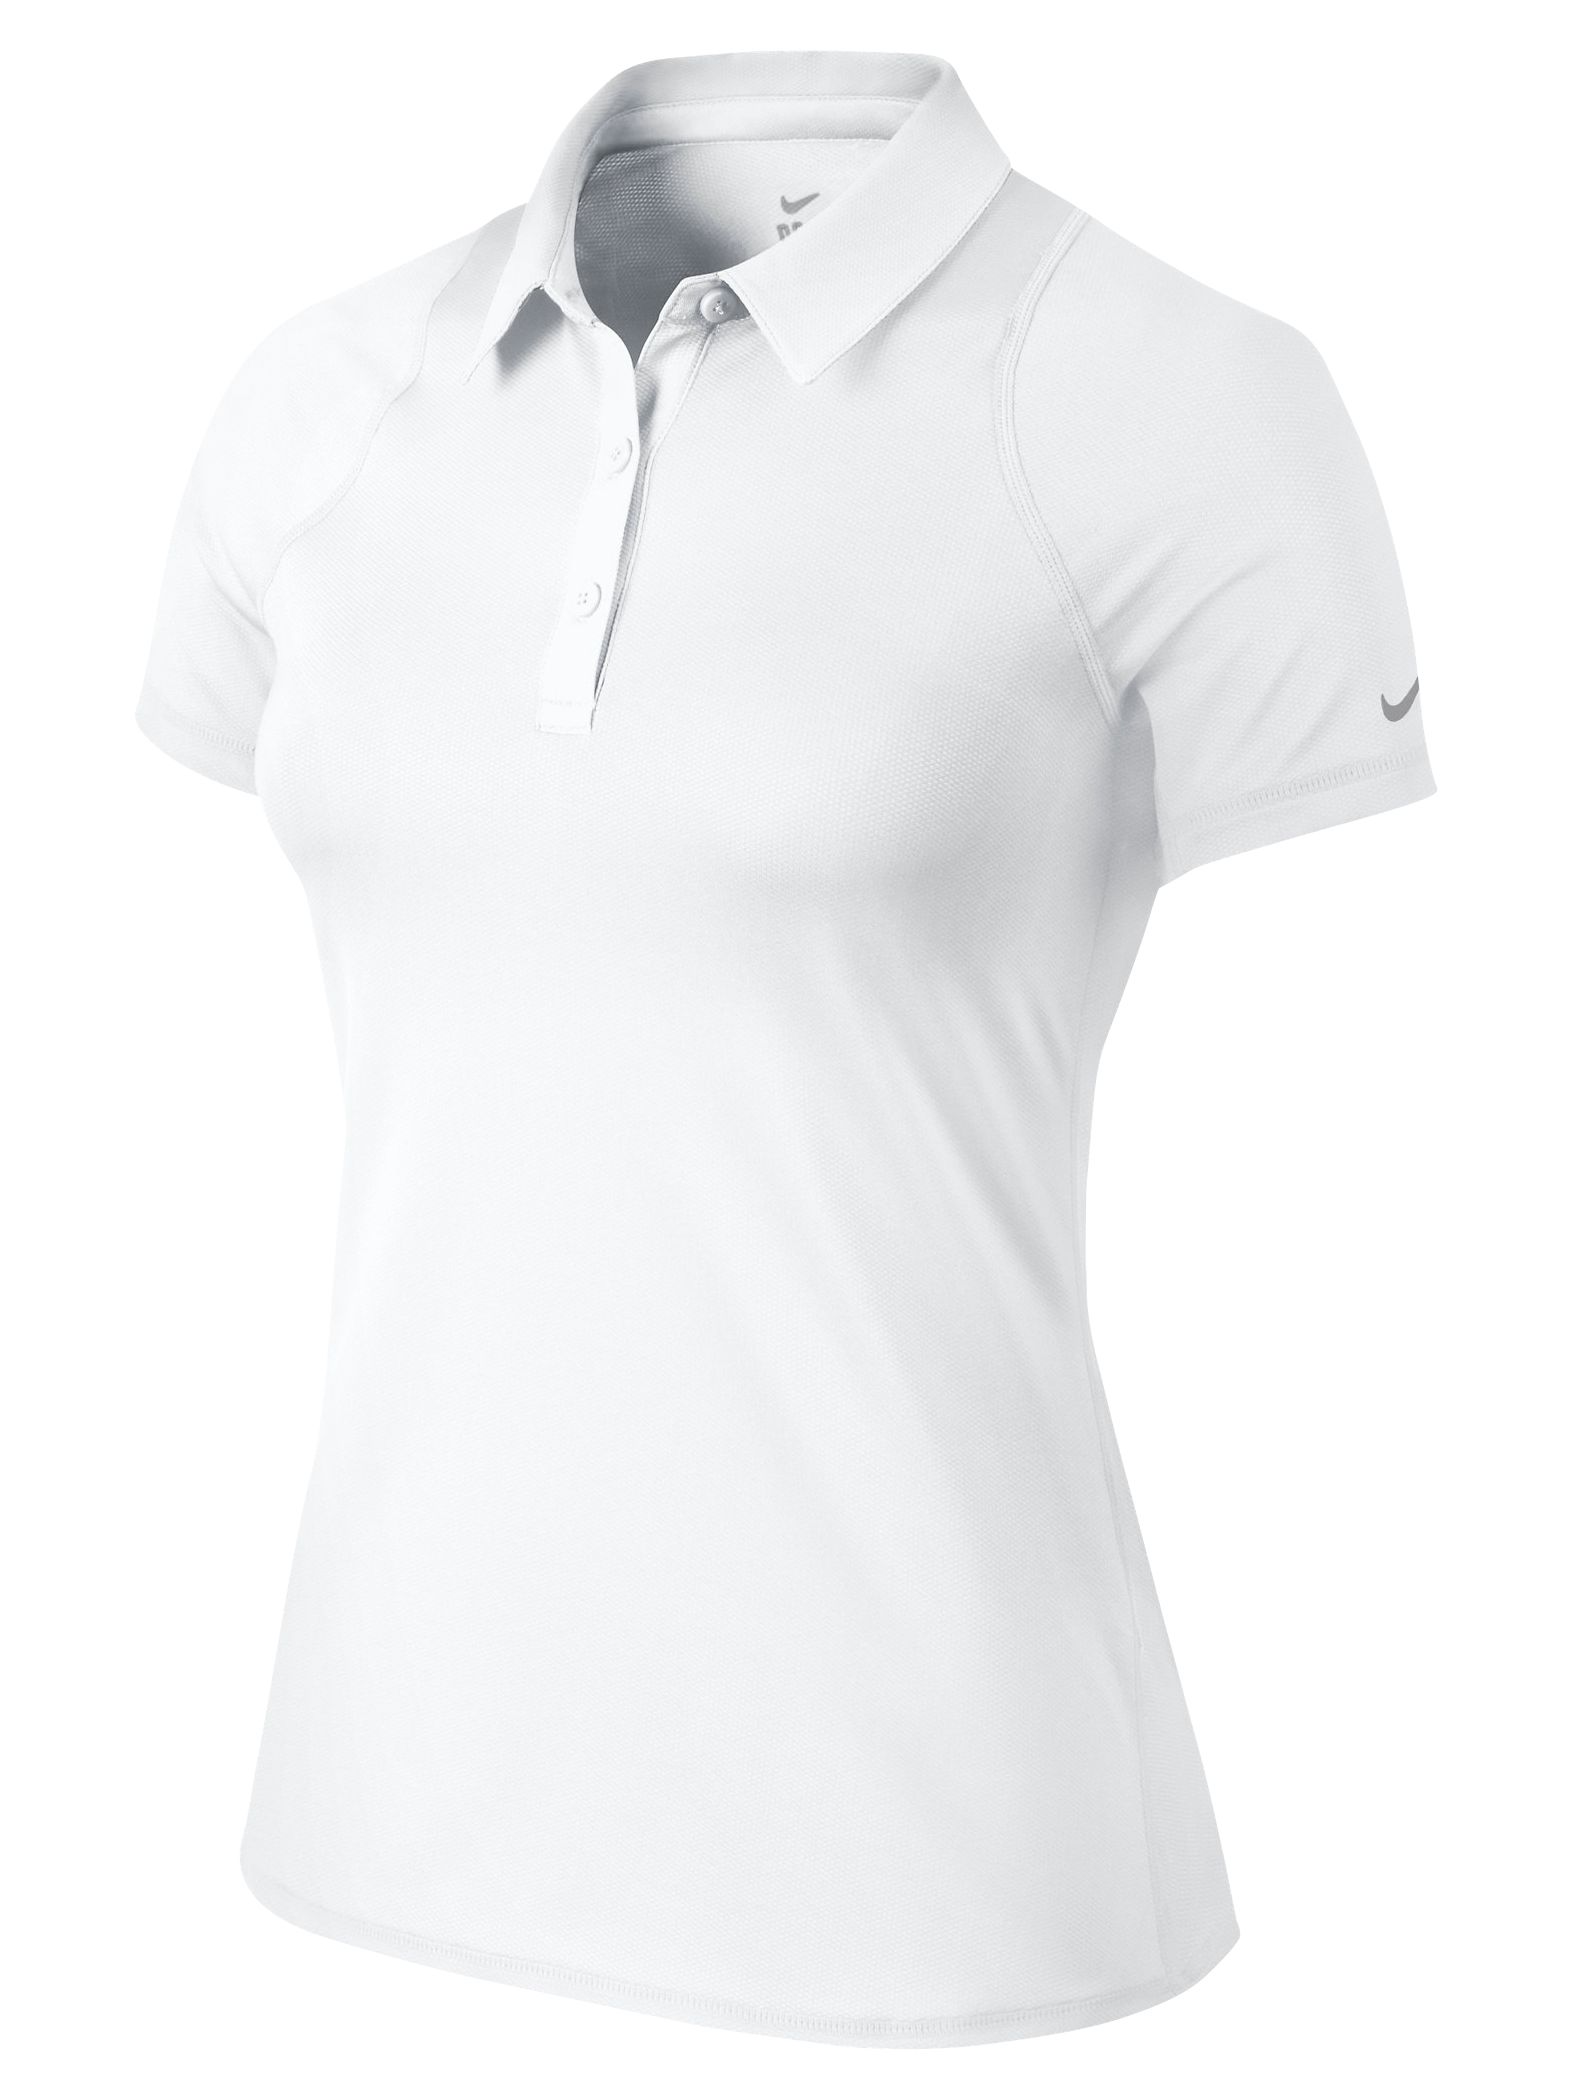 white nike polo shirt womens